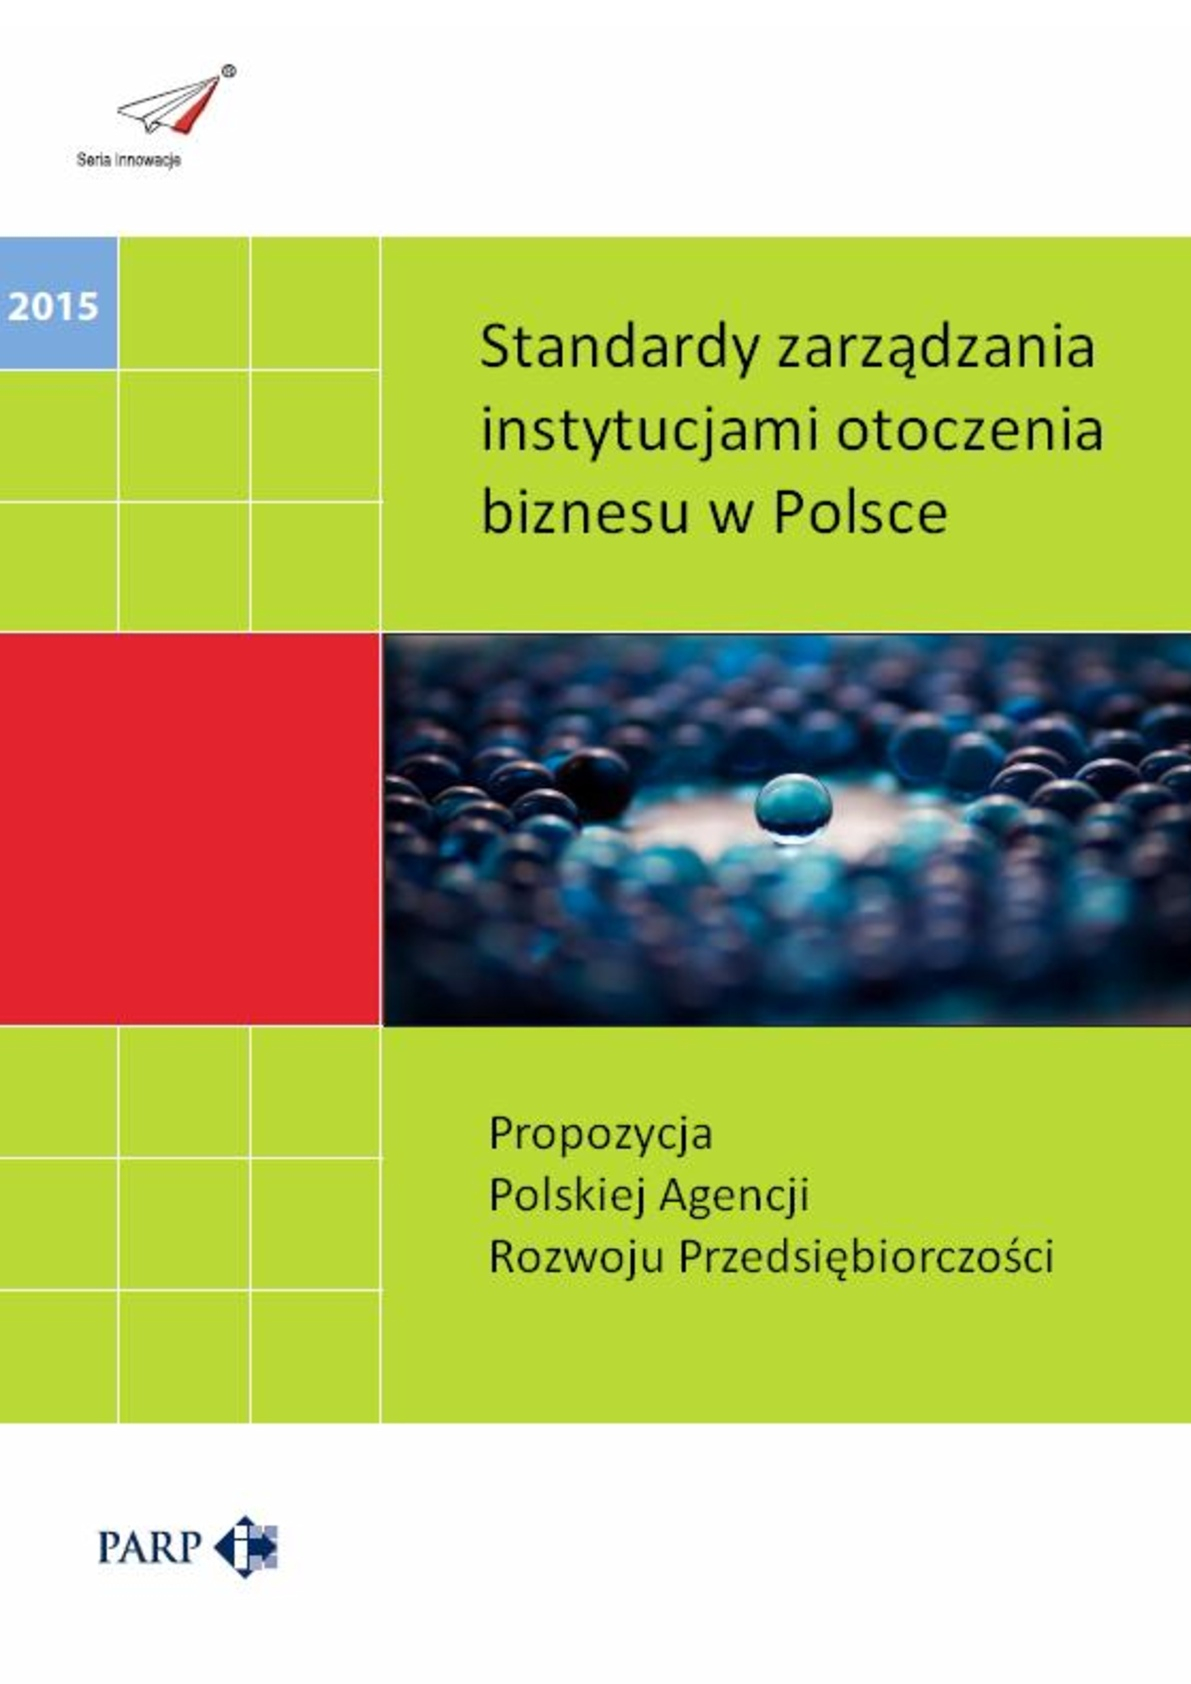 Standardy zarządzania instytucjami otoczenia biznesu w Polsce